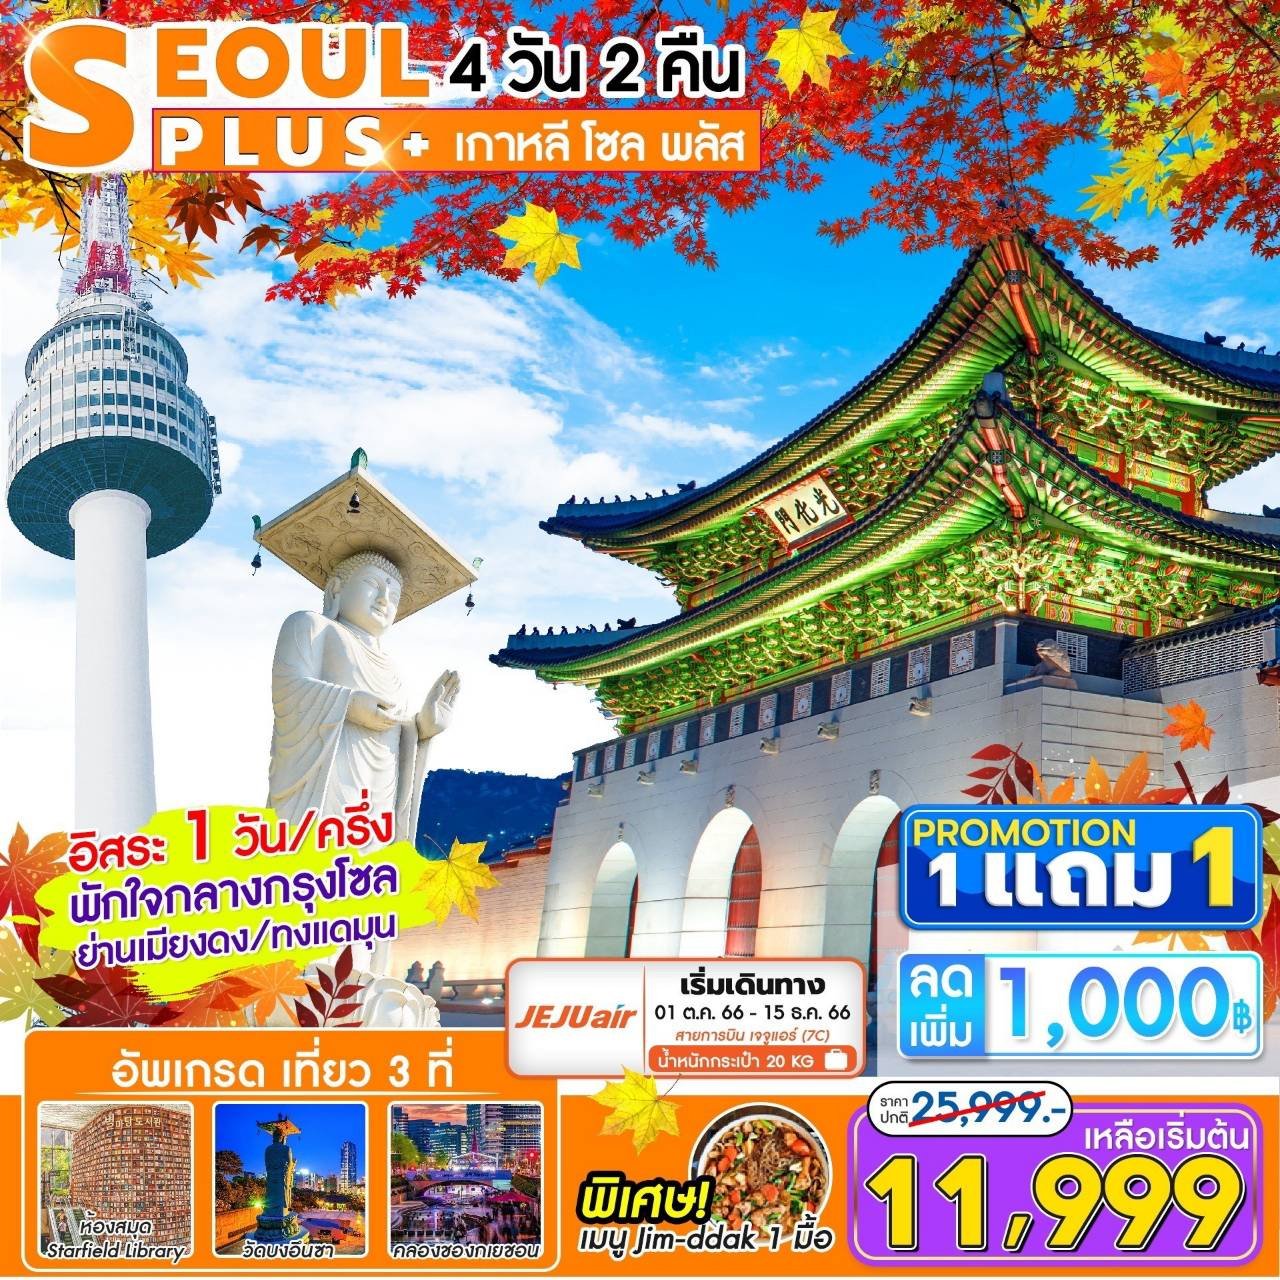 (โปรโมชั่น!!! ซื้อ 1 แถม 1) ทัวร์เกาหลี โซล Seoul Plus+ 4 วัน 2 คืน